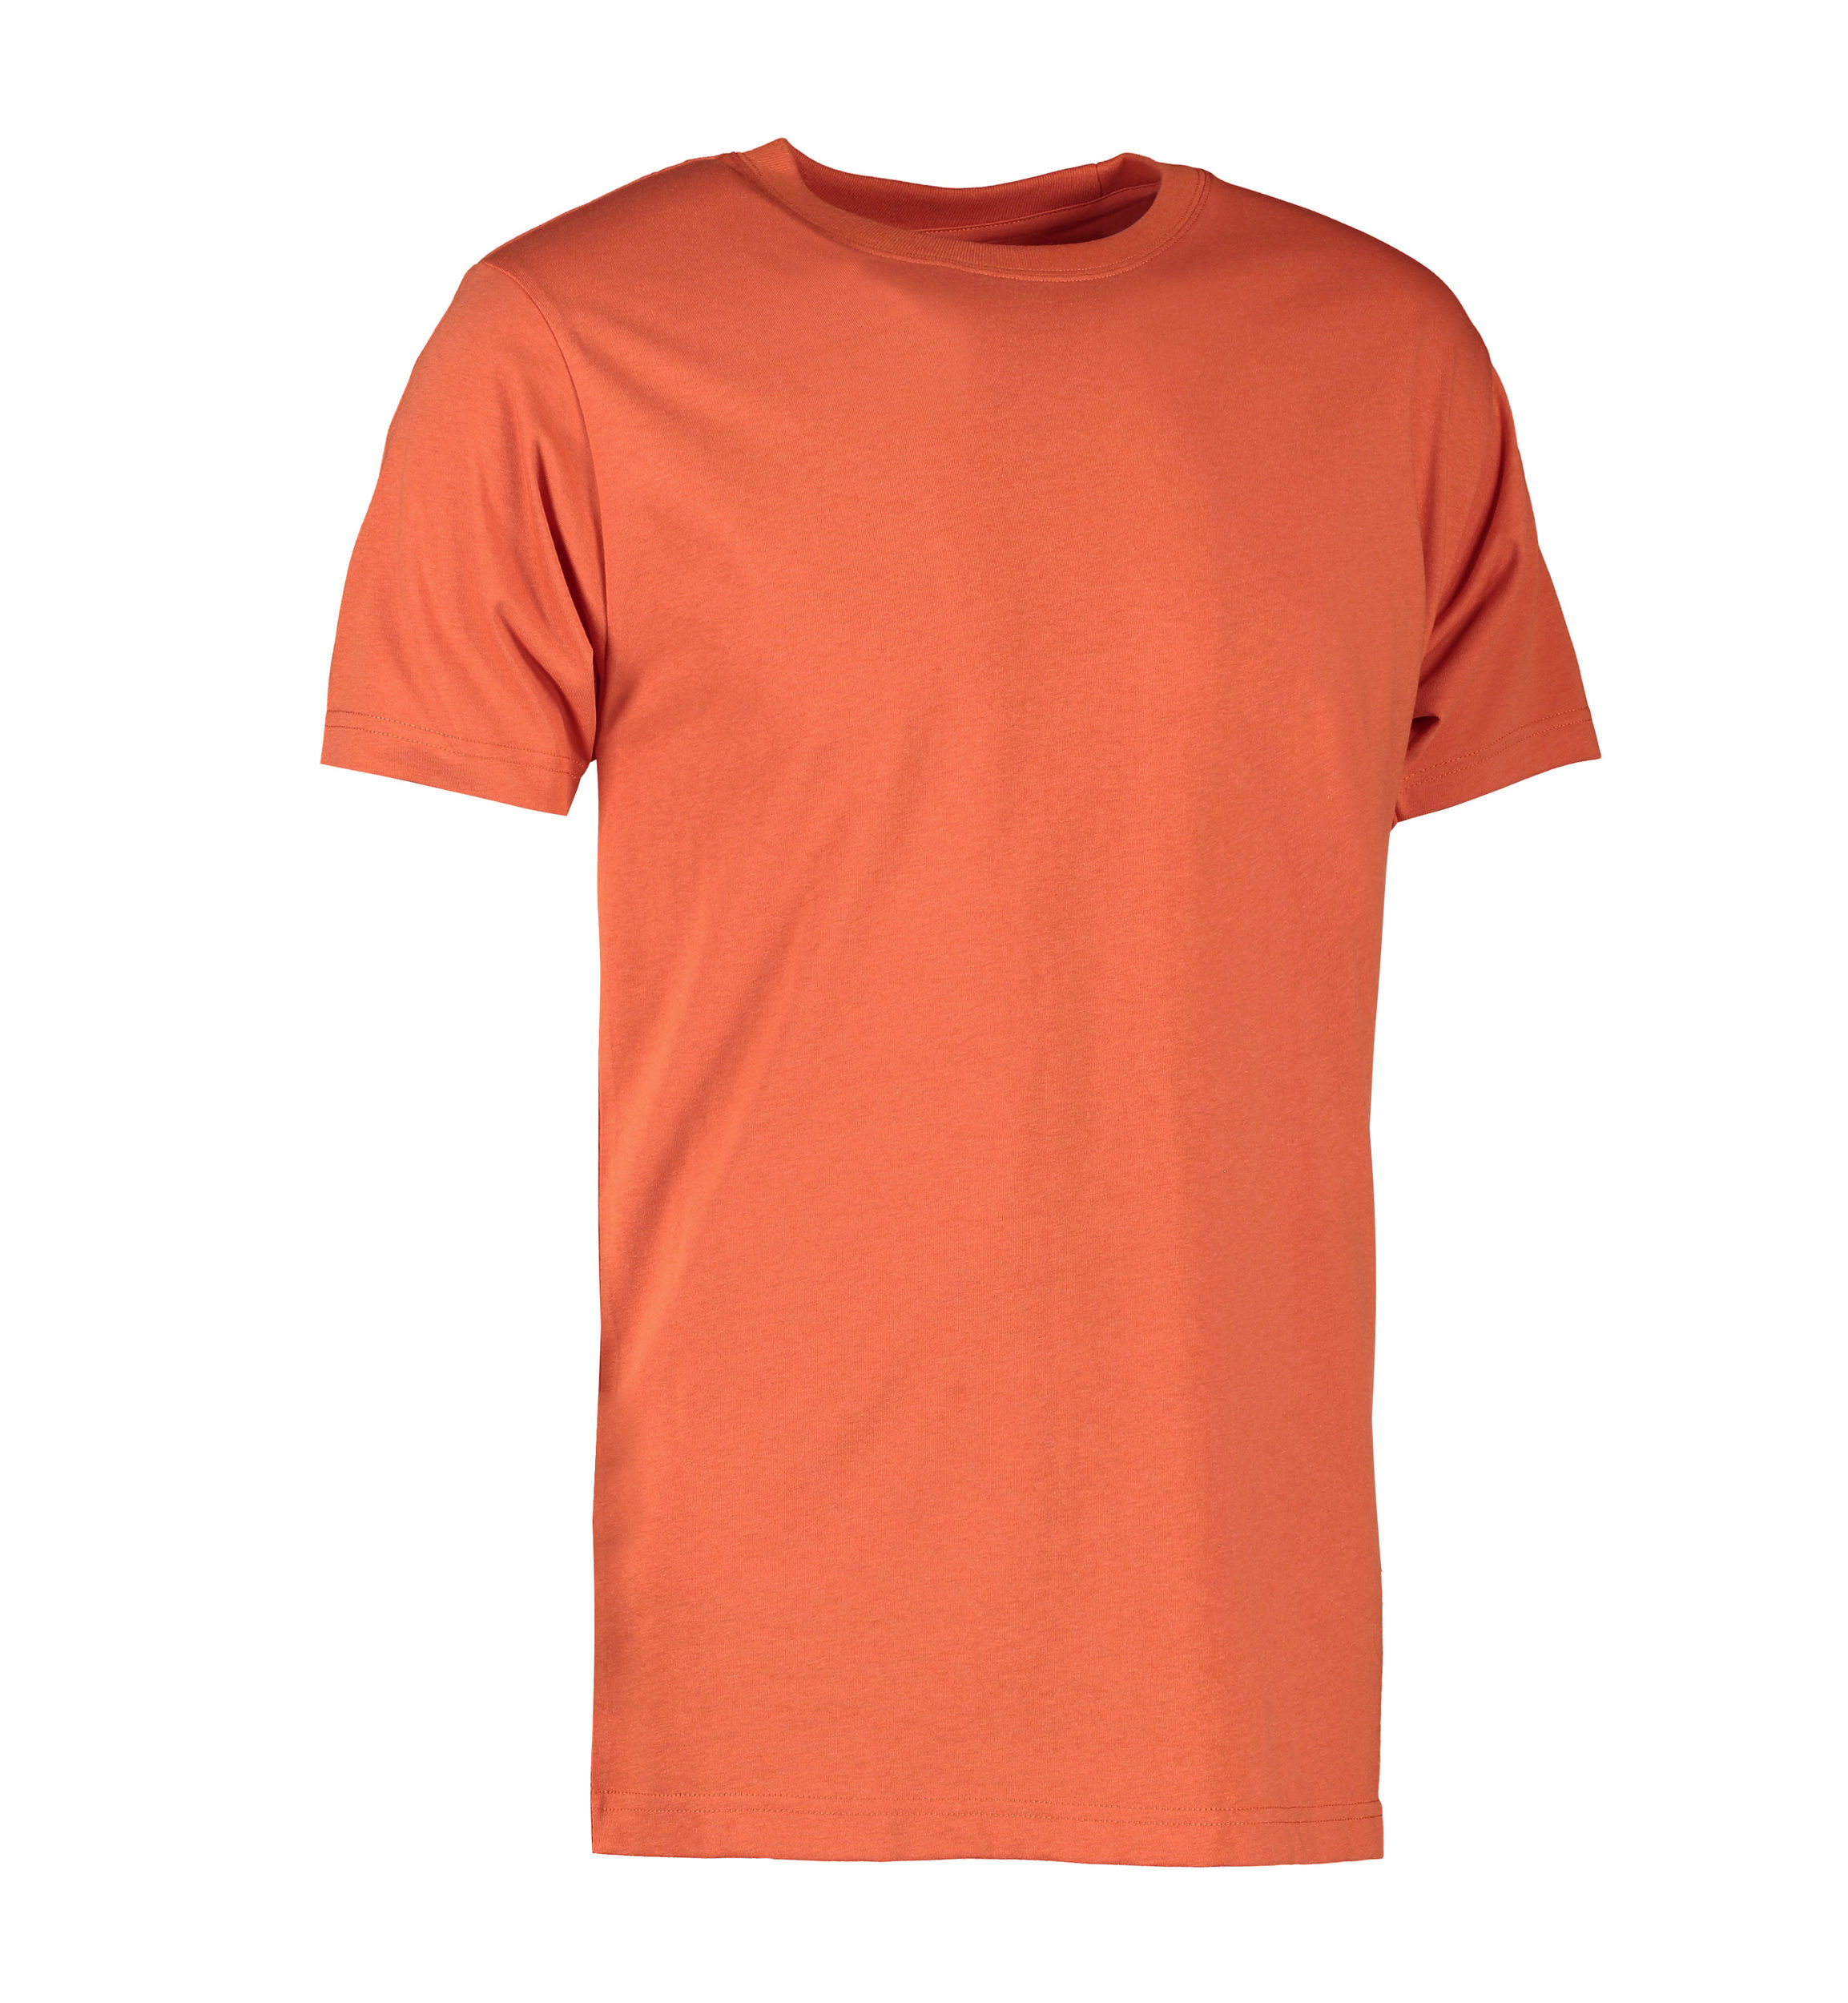 Billede af Koral farvet slidstærk t-shirt til mænd - 4XL hos Sygeplejebutikken.dk